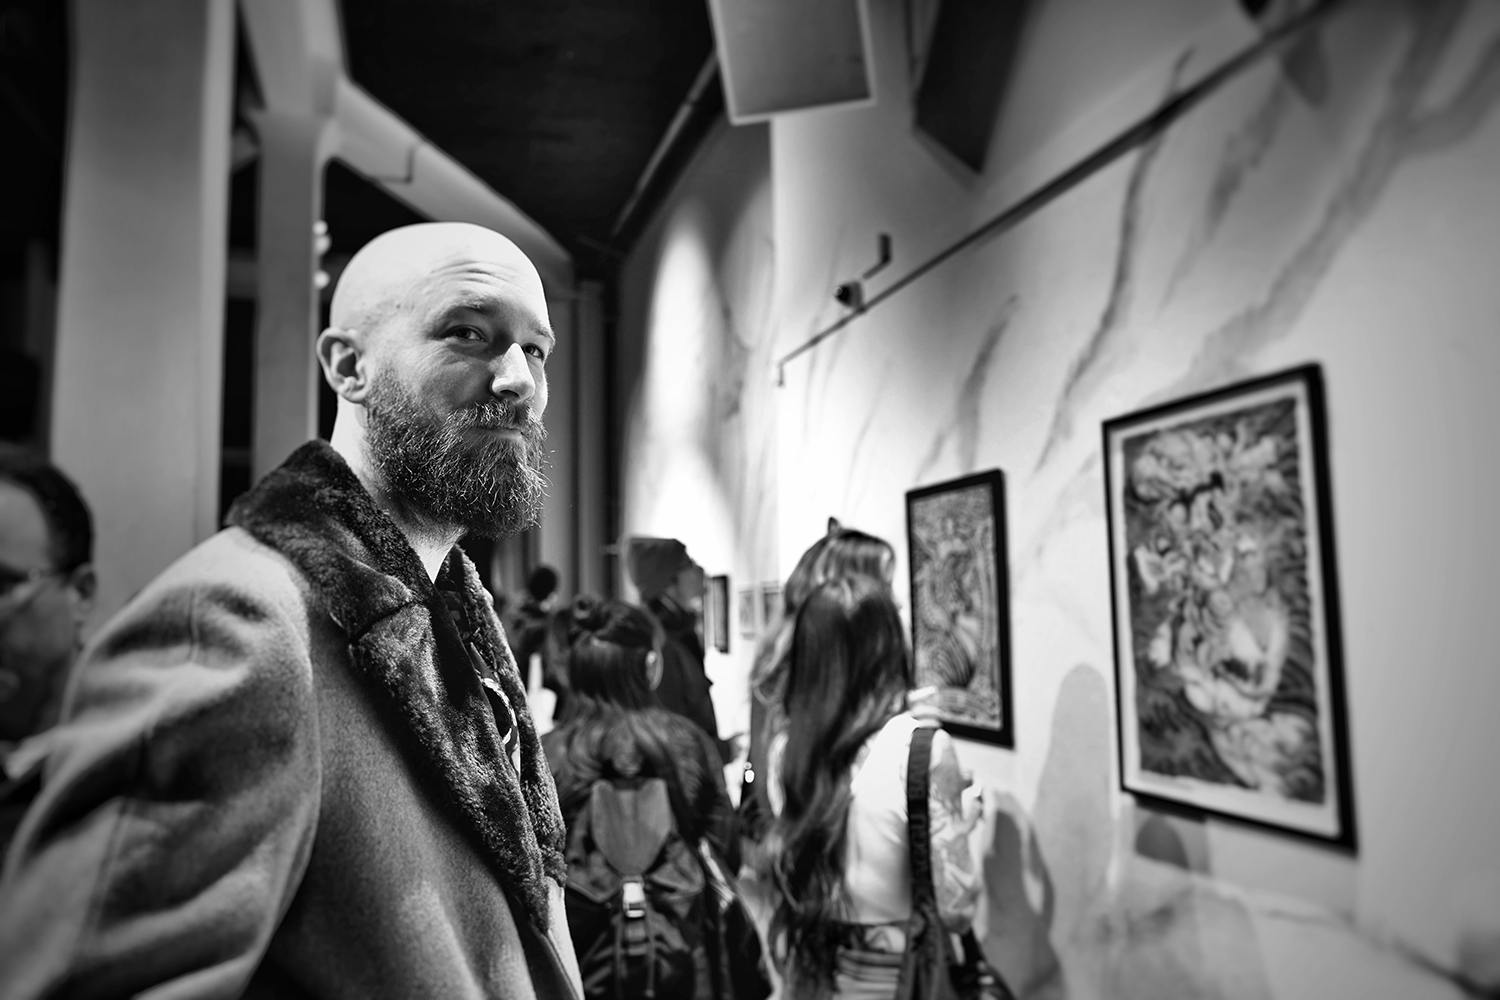 Tattooist Matt Leibo at art exhibit at 111 minna gallery